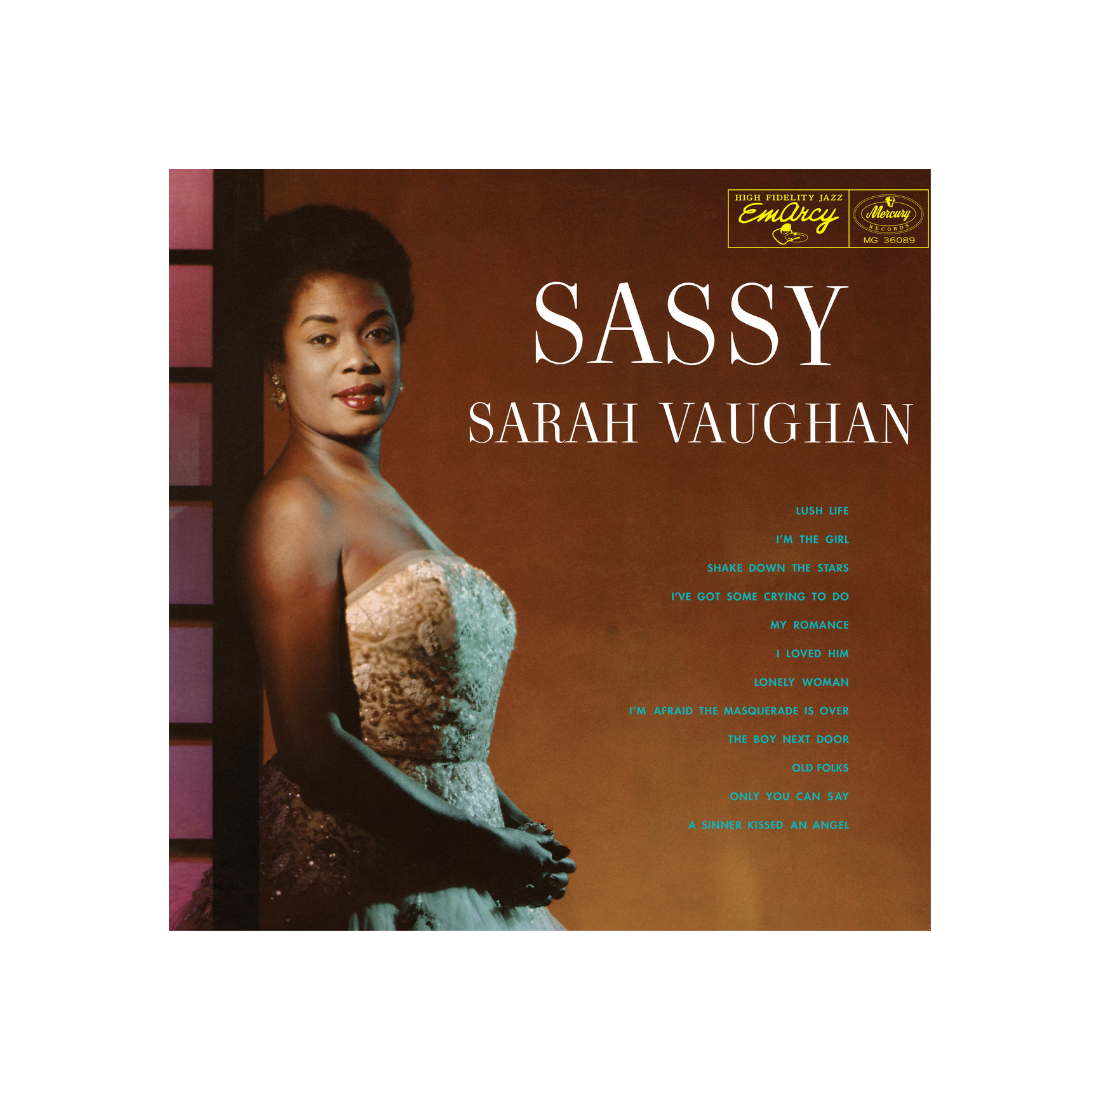 Sarah Vaughan - Sassy (Acoustic Sounds): Vinyl LP